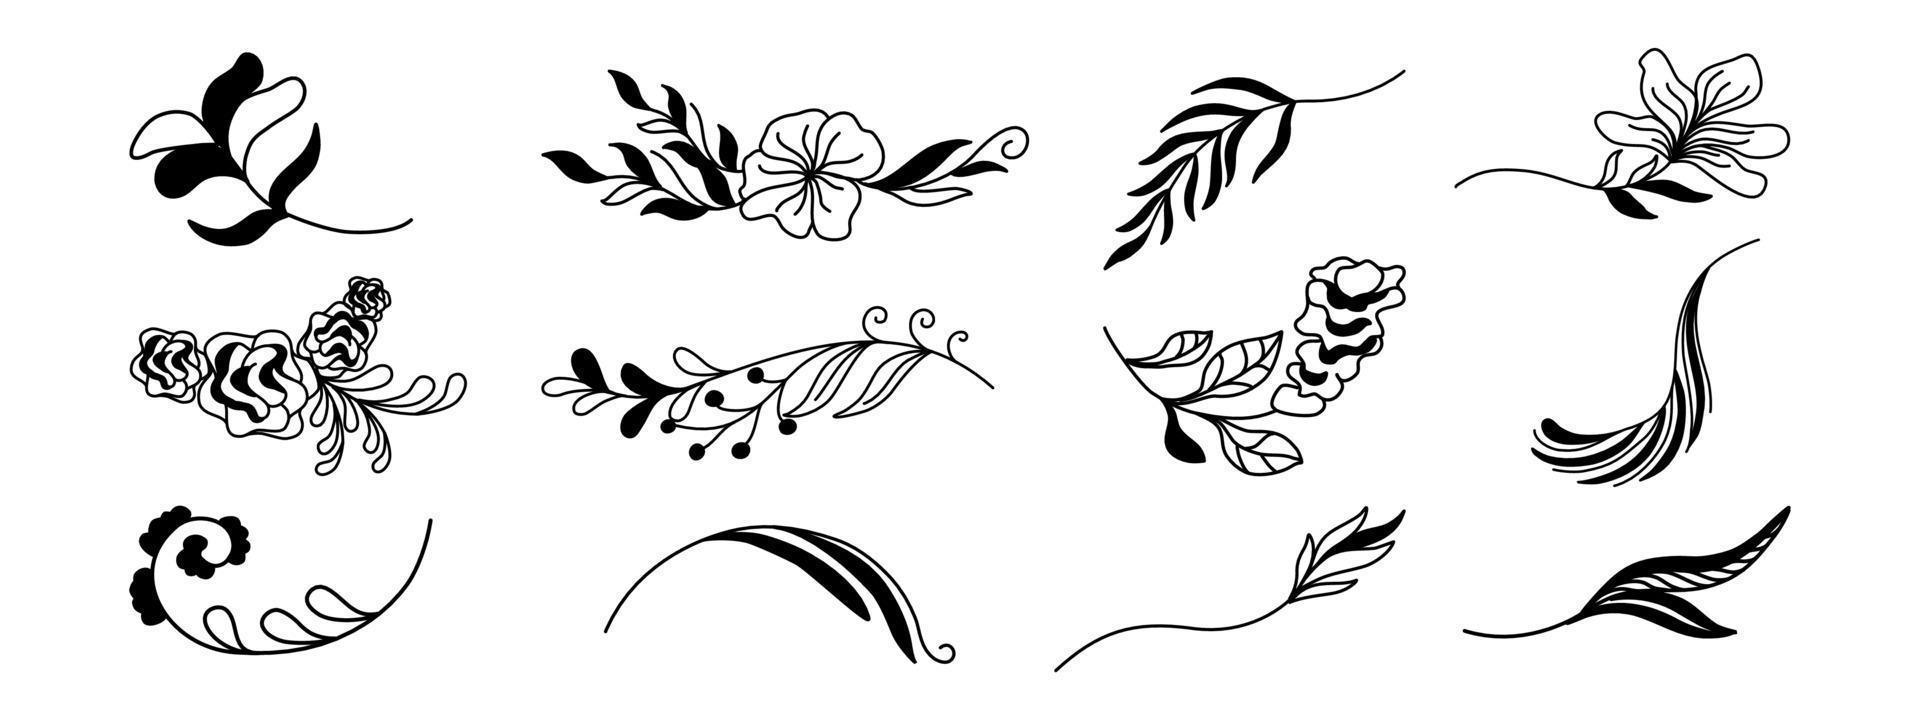 elementos de flores y hojas diseñados en tonos negros para decoraciones, tarjetas, telones de fondo, marcos, bordes, patrones de papel, patrones de tela, decoraciones temáticas de primavera, álbumes de recortes y más. vector